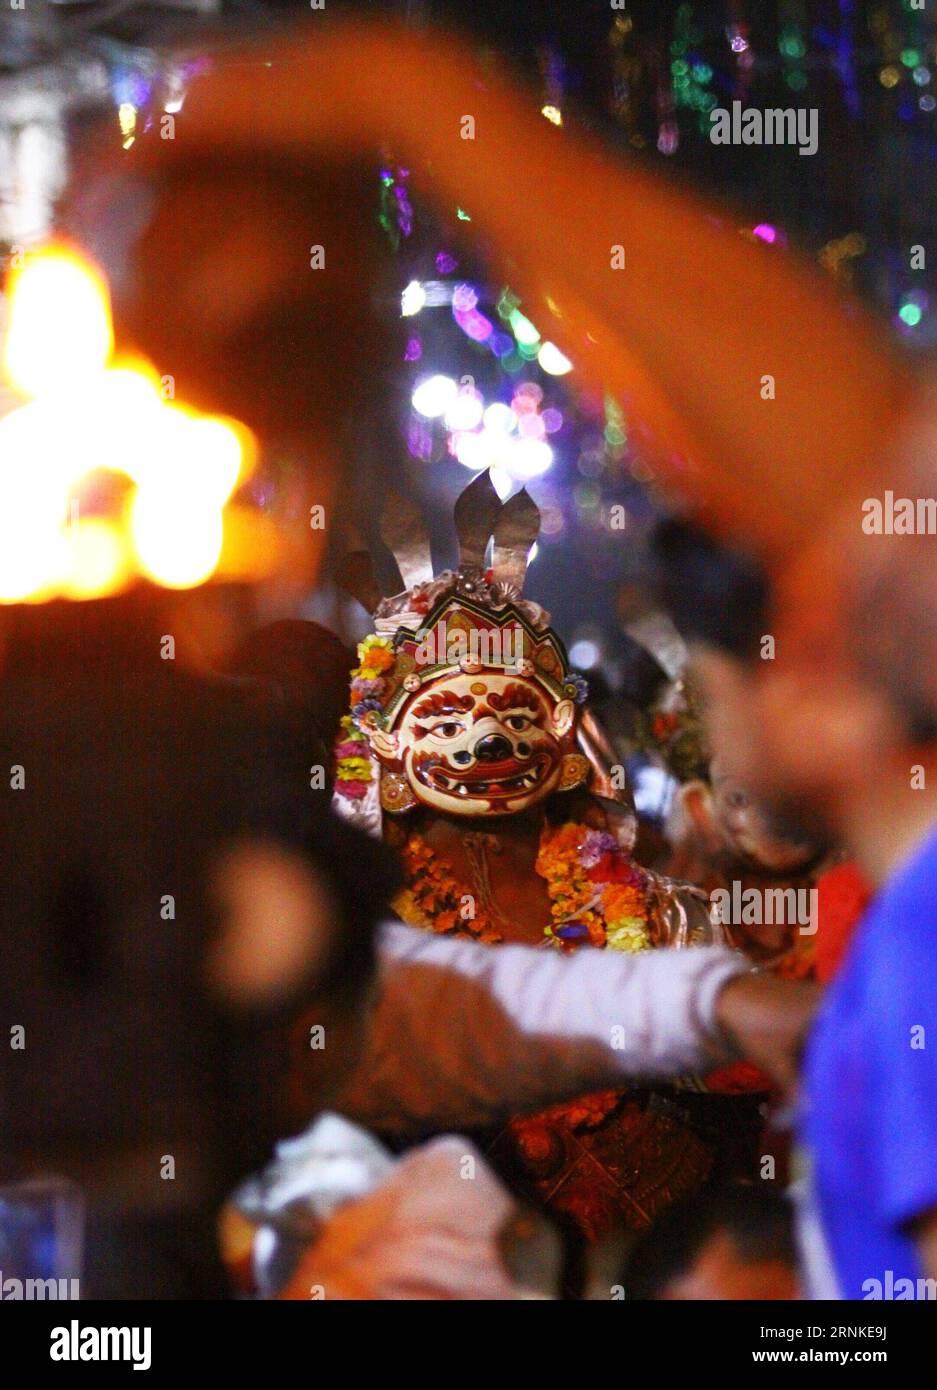 (170327) -- KATMANDOU, le 27 mars 2017 -- Une danseuse masquée déguisée en divinités interprète Devi Dance pour marquer le traditionnel Ghode Jatra, ou festival de courses de chevaux à Katmandou, Népal, le 26 mars 2017.) (lrz) NÉPAL - KATMANDOU - GHODE JATRA FESTIVAL - DEVI DANSE SunilxSharma PUBLICATIONxNOTxINxCHN Katmandou Mars 27 2017 une danseuse masquée déguisée en divinités interprète Devi danse pour marquer le traditionnel Ghode Jatra ou Festival de courses de chevaux à Katmandou Népal Mars 26 2017 lrz Népal Kathmandu Ghode Jatra Festival Devi danse SunilxSharma PUBLICATIONxNOTxINxCHN Banque D'Images